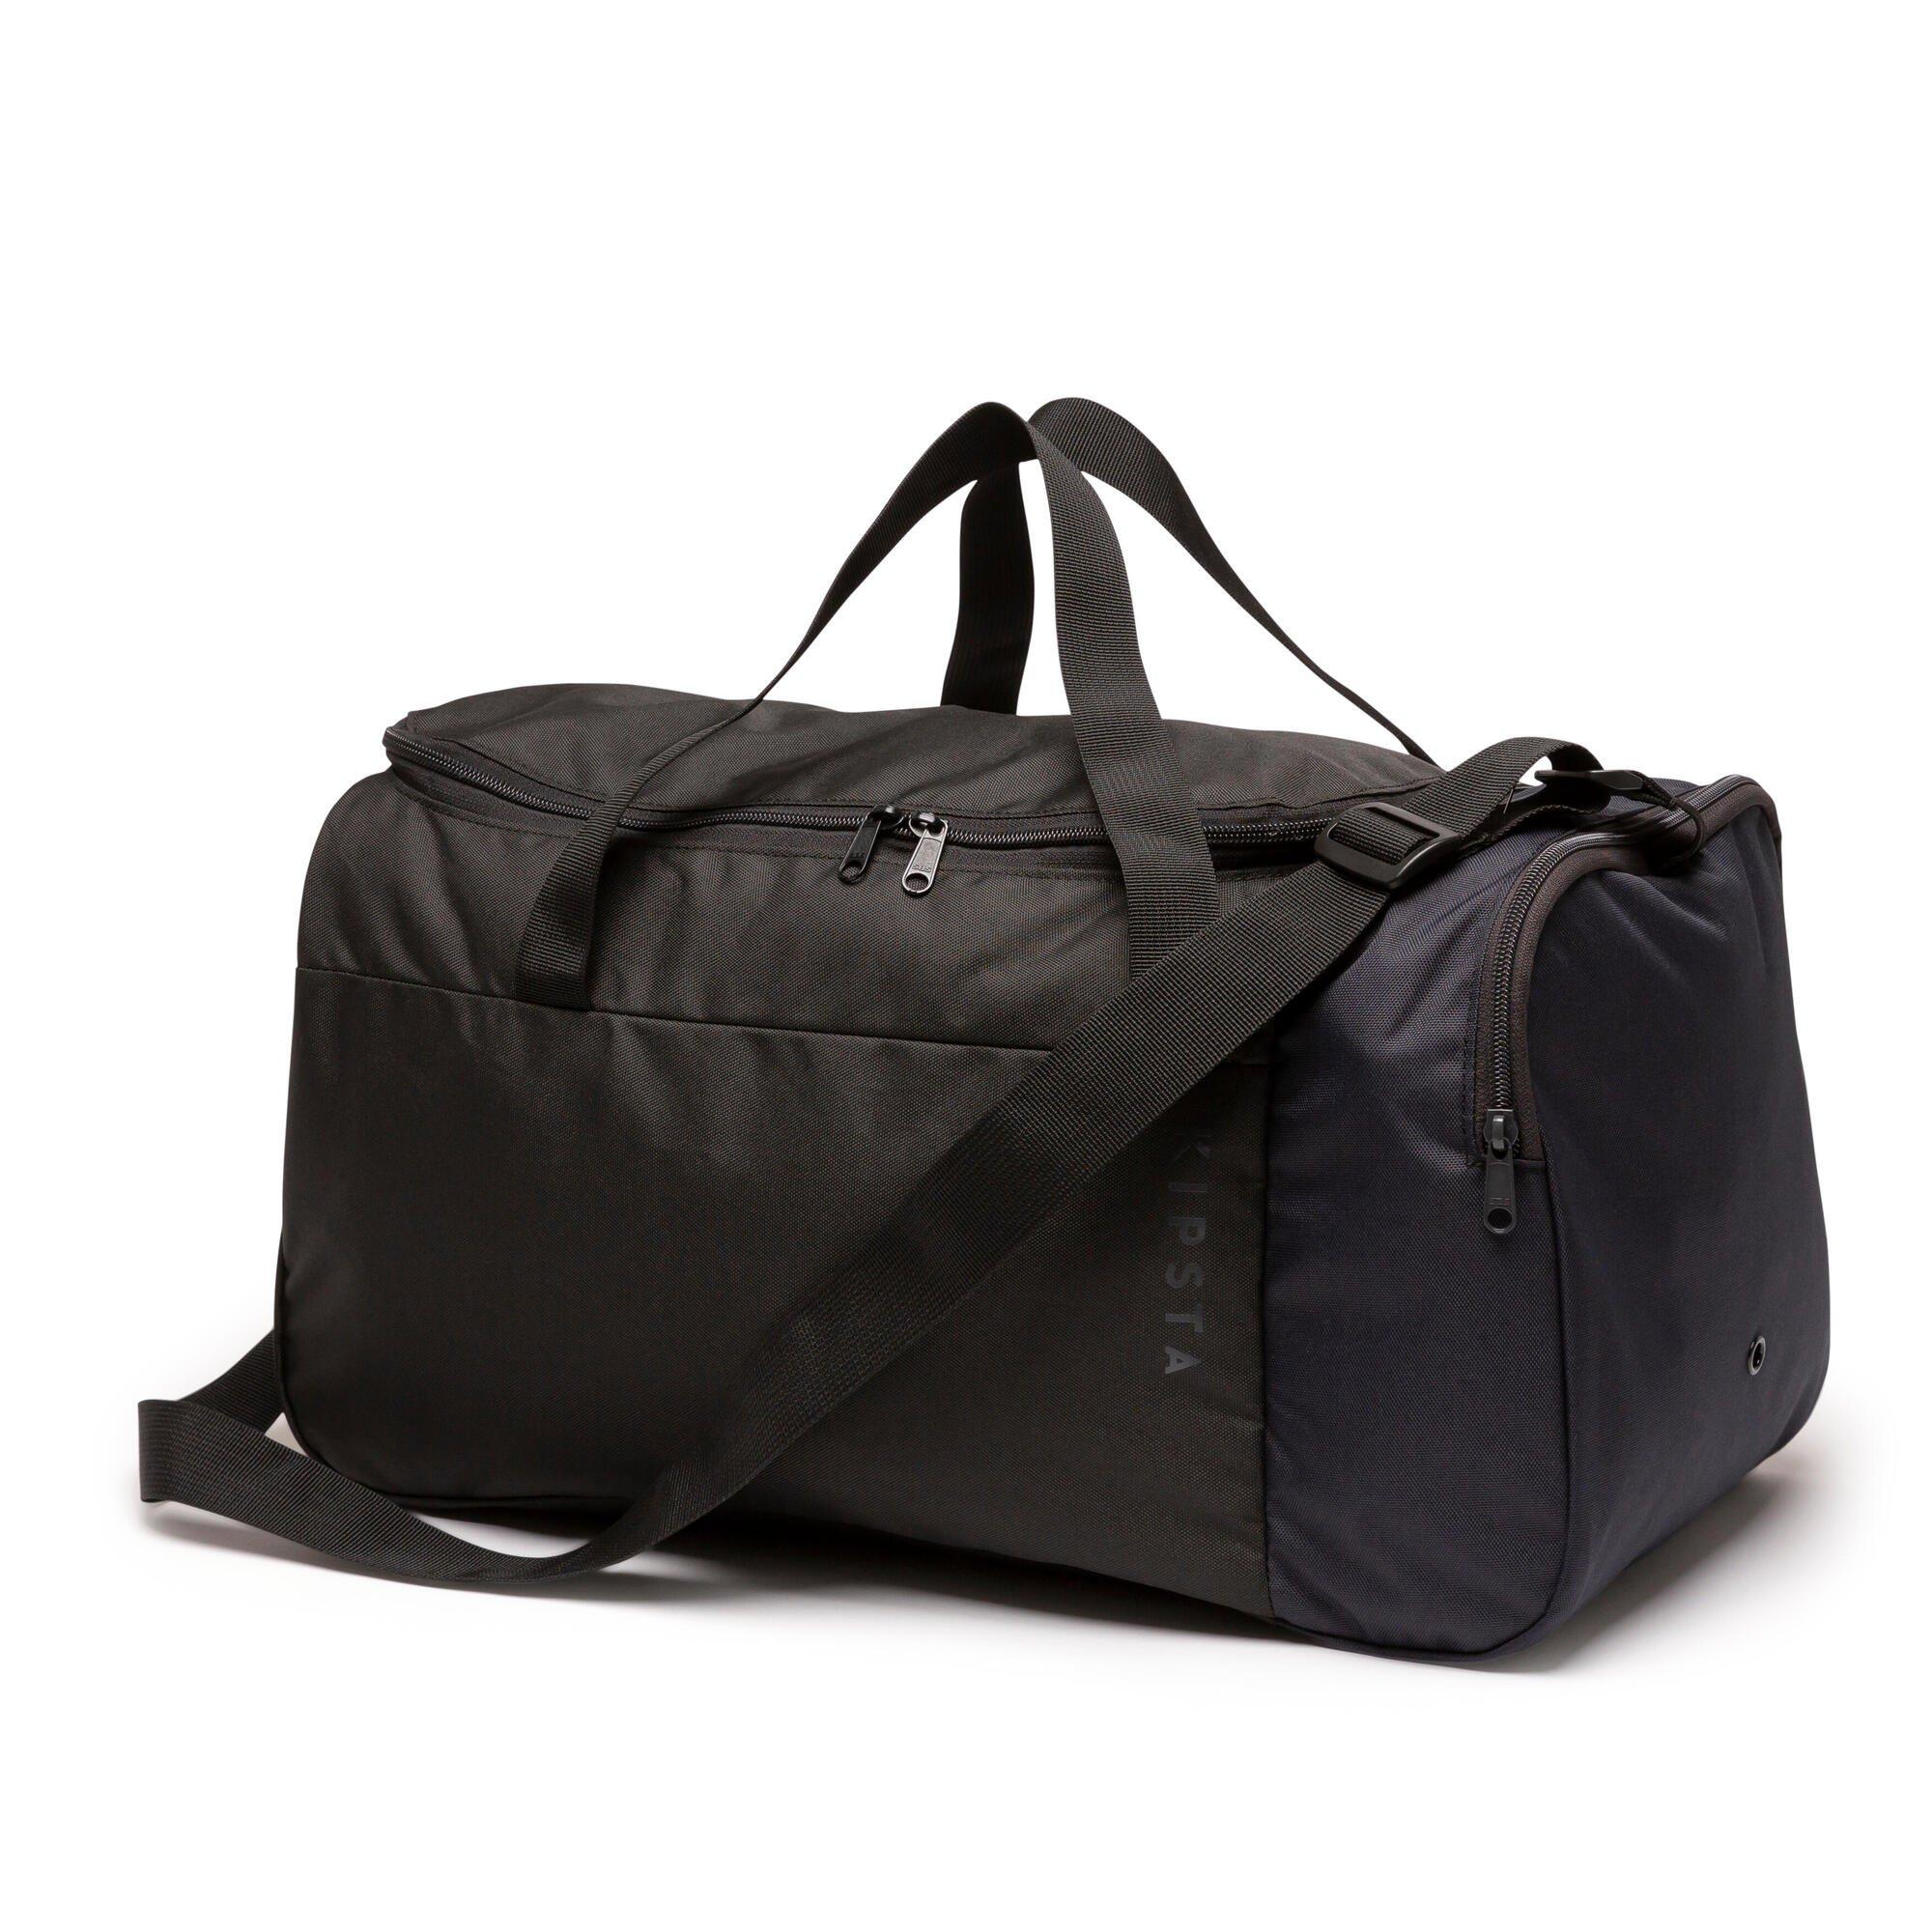 Спортивная сумка Decathlon Essential 35 л. Kipsta, черный набор для вышивания lovely mum мамочка 26 x 26 см bothy threads xhd2